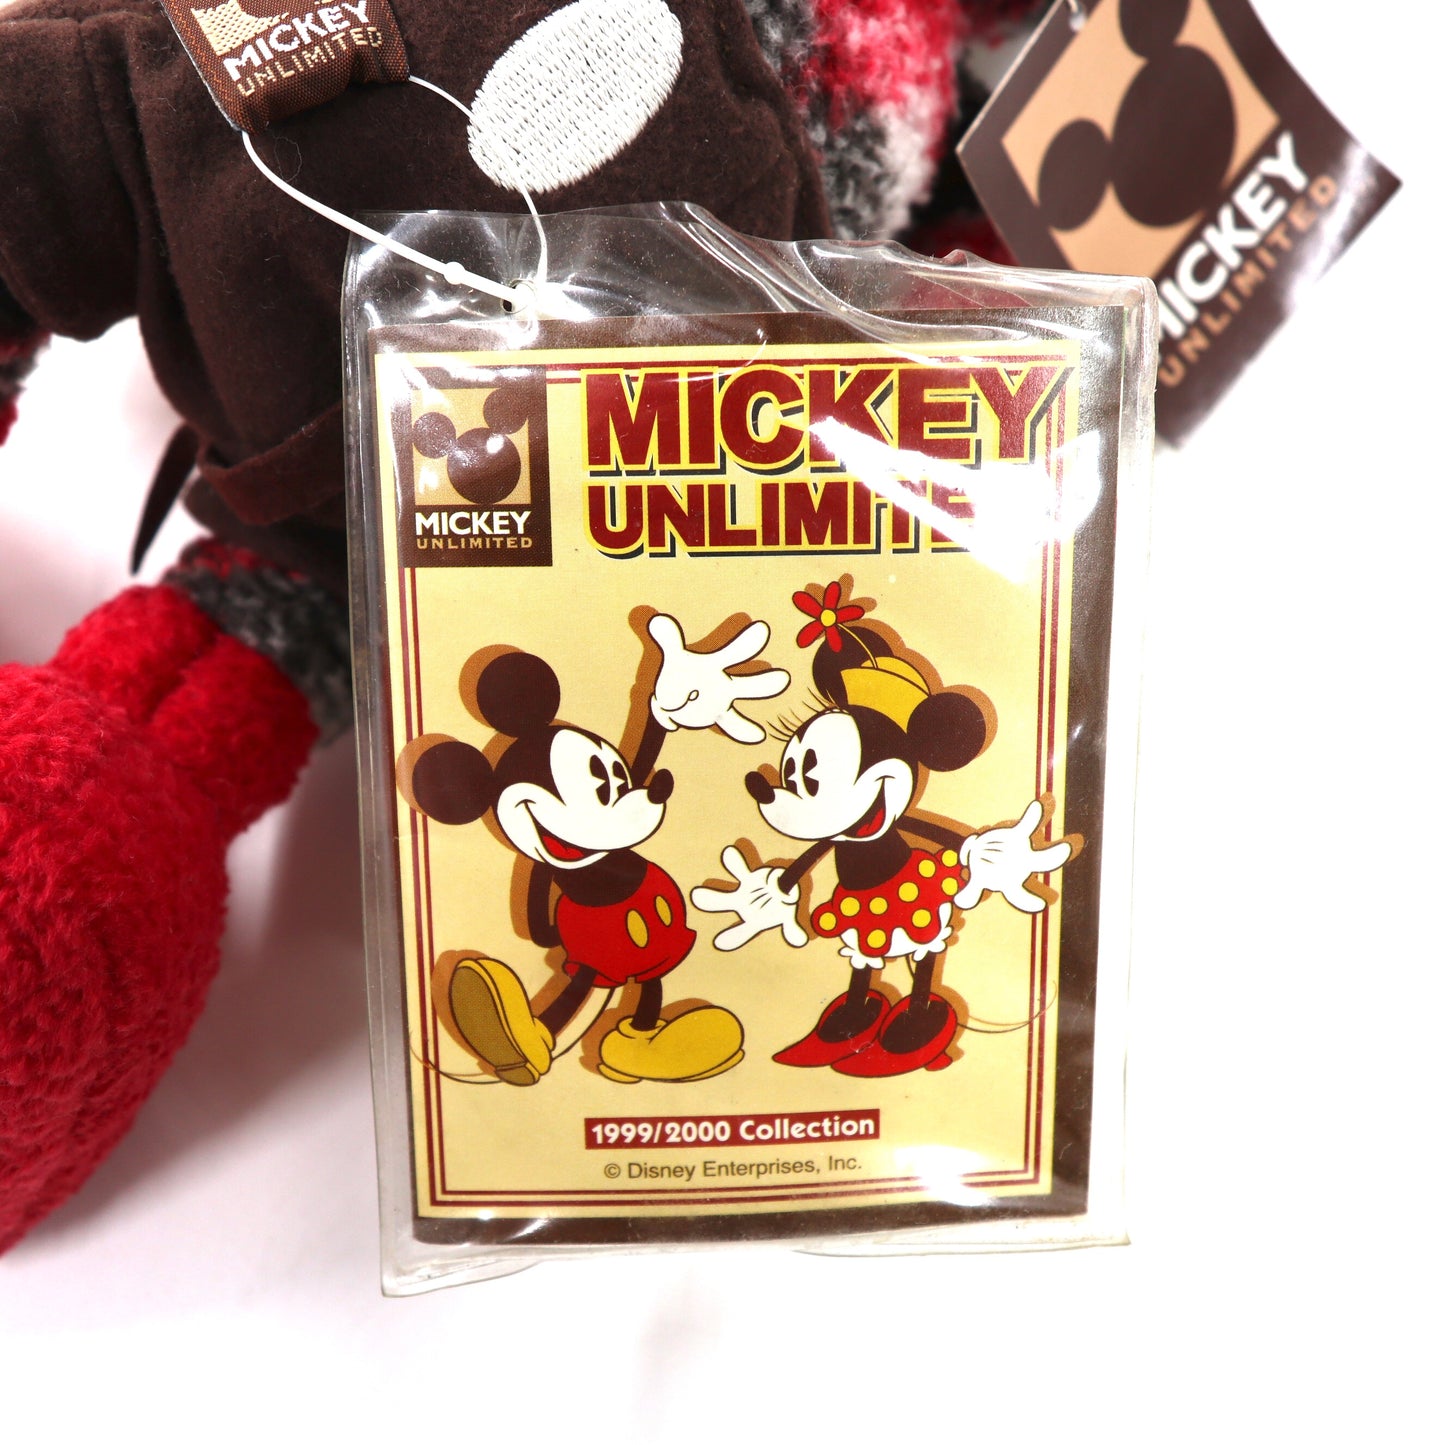 MICKEY UNLIMITED ぬいぐるみ S チェック ミッキーマウス 未使用品